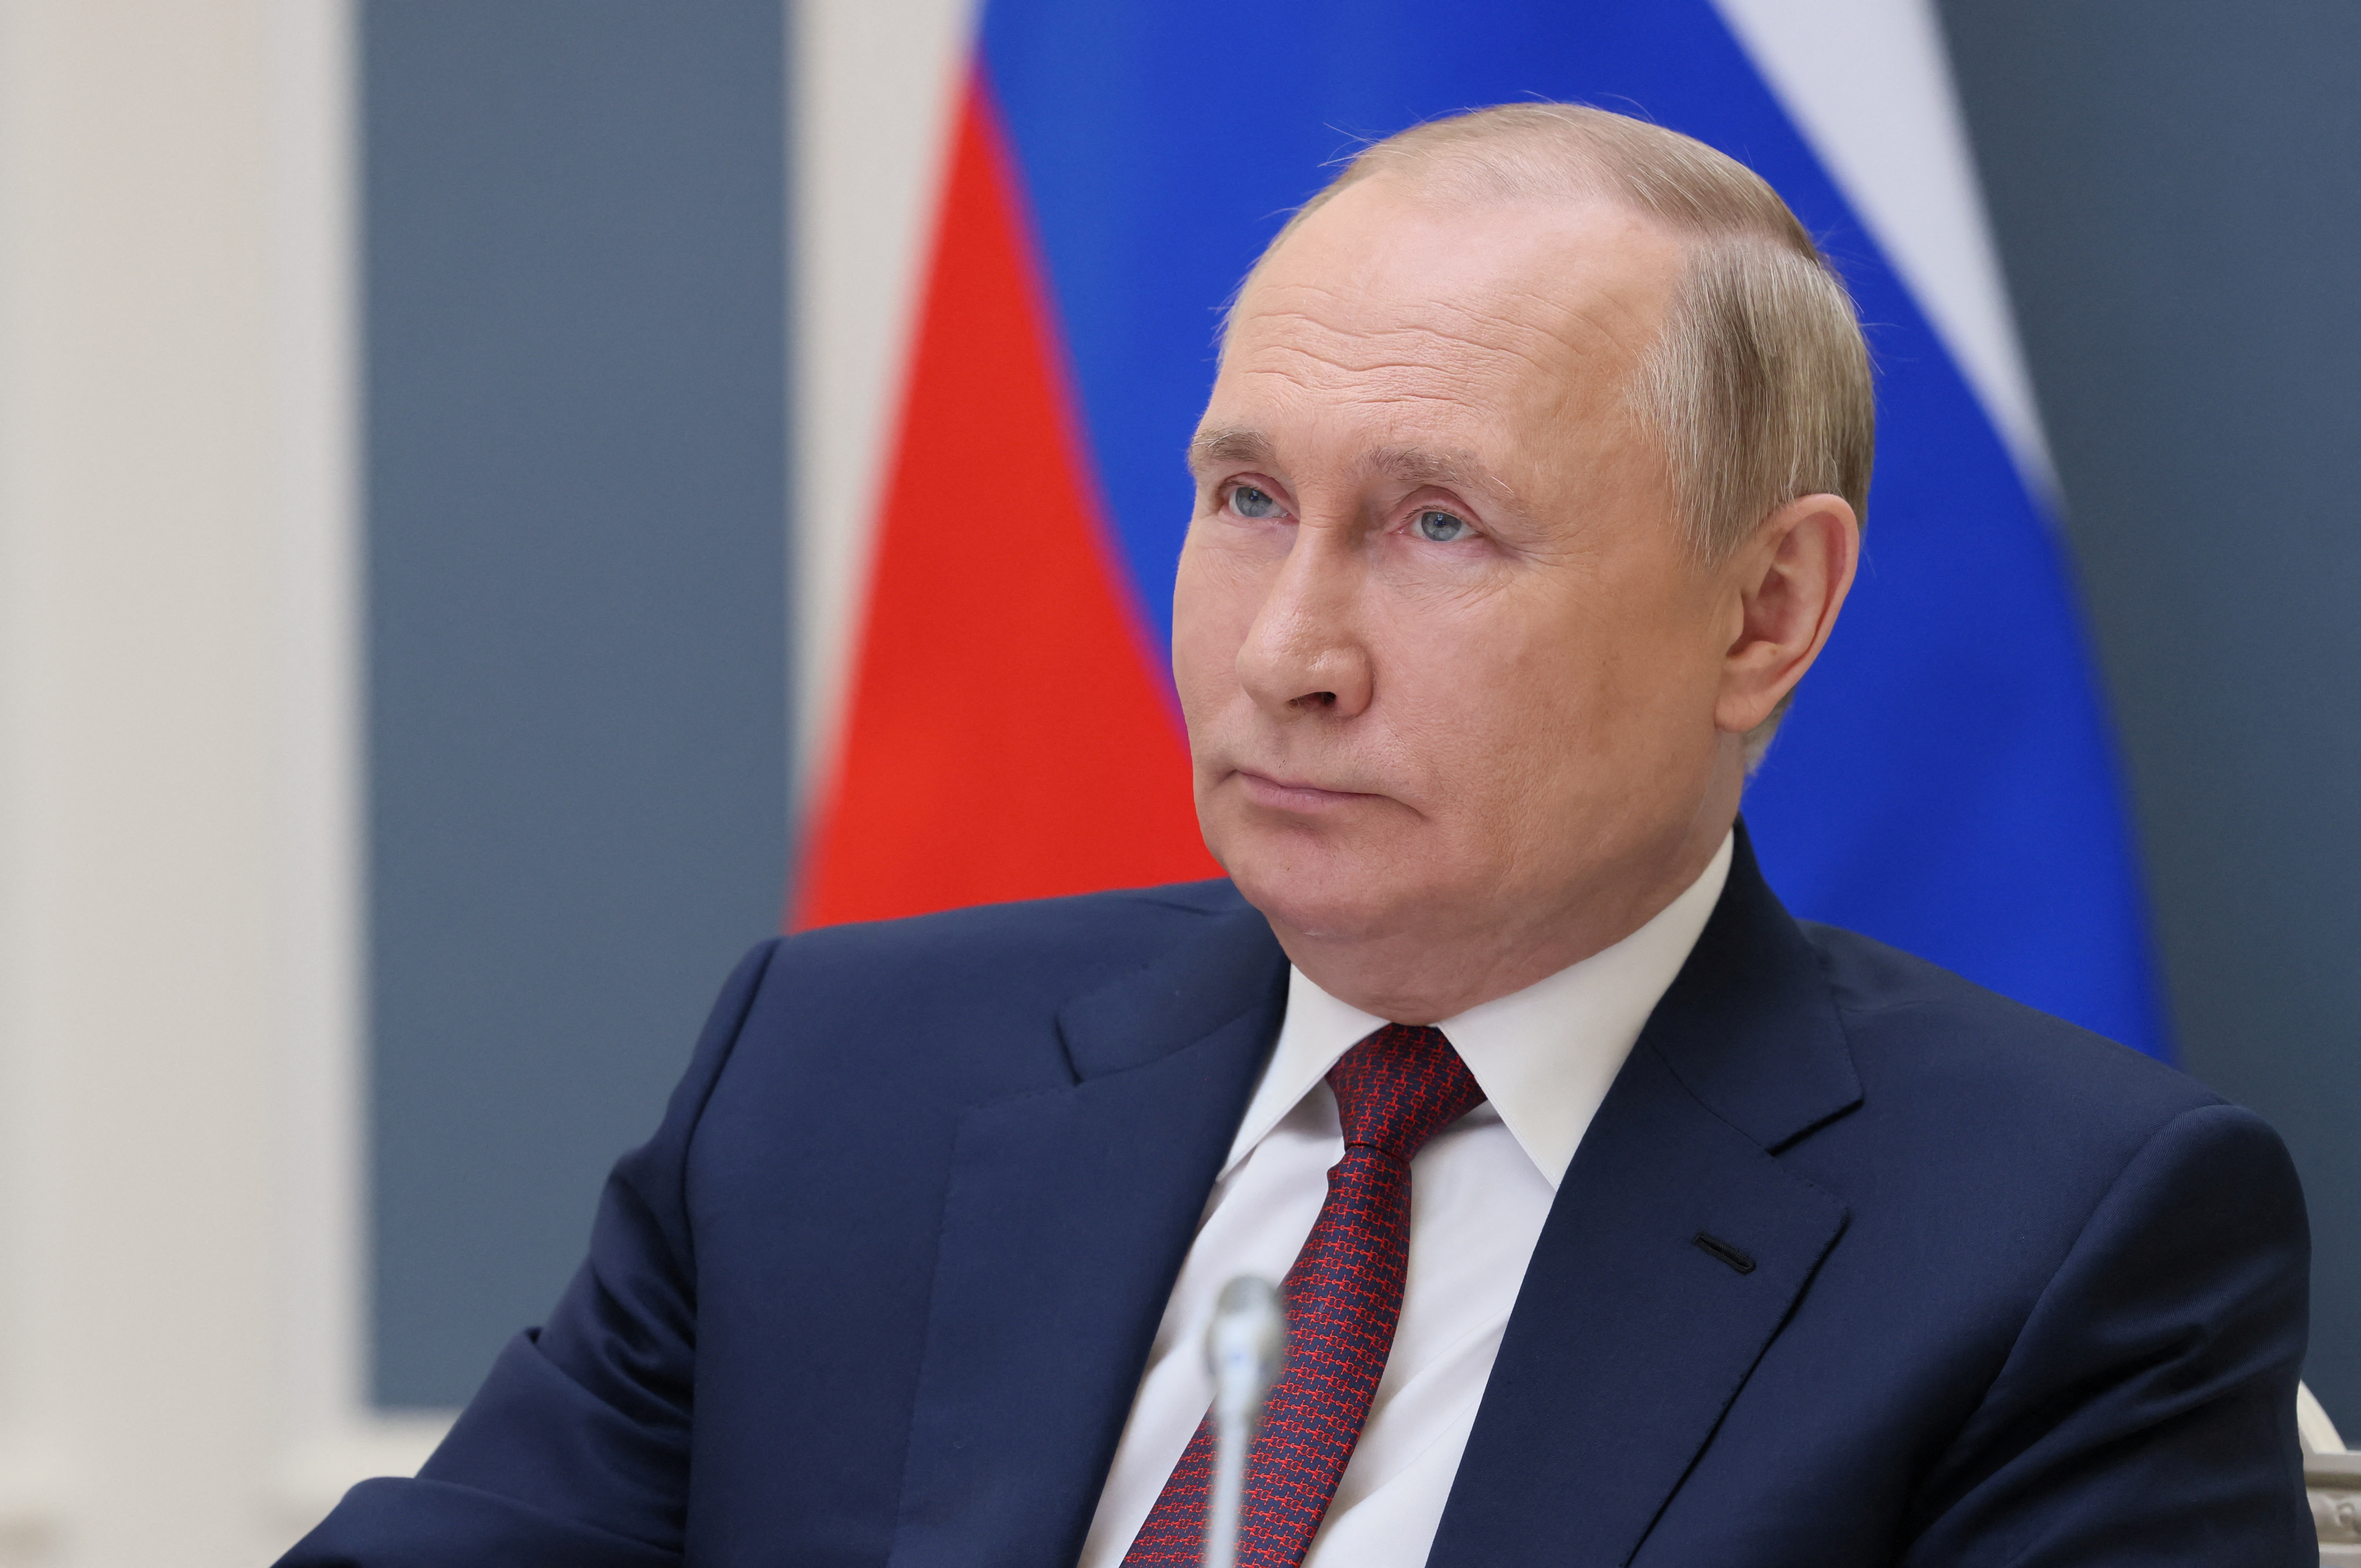 Crise alimentaire : Poutine veut troquer l'exportation de céréales russes contre la fin des sanctions occidentales